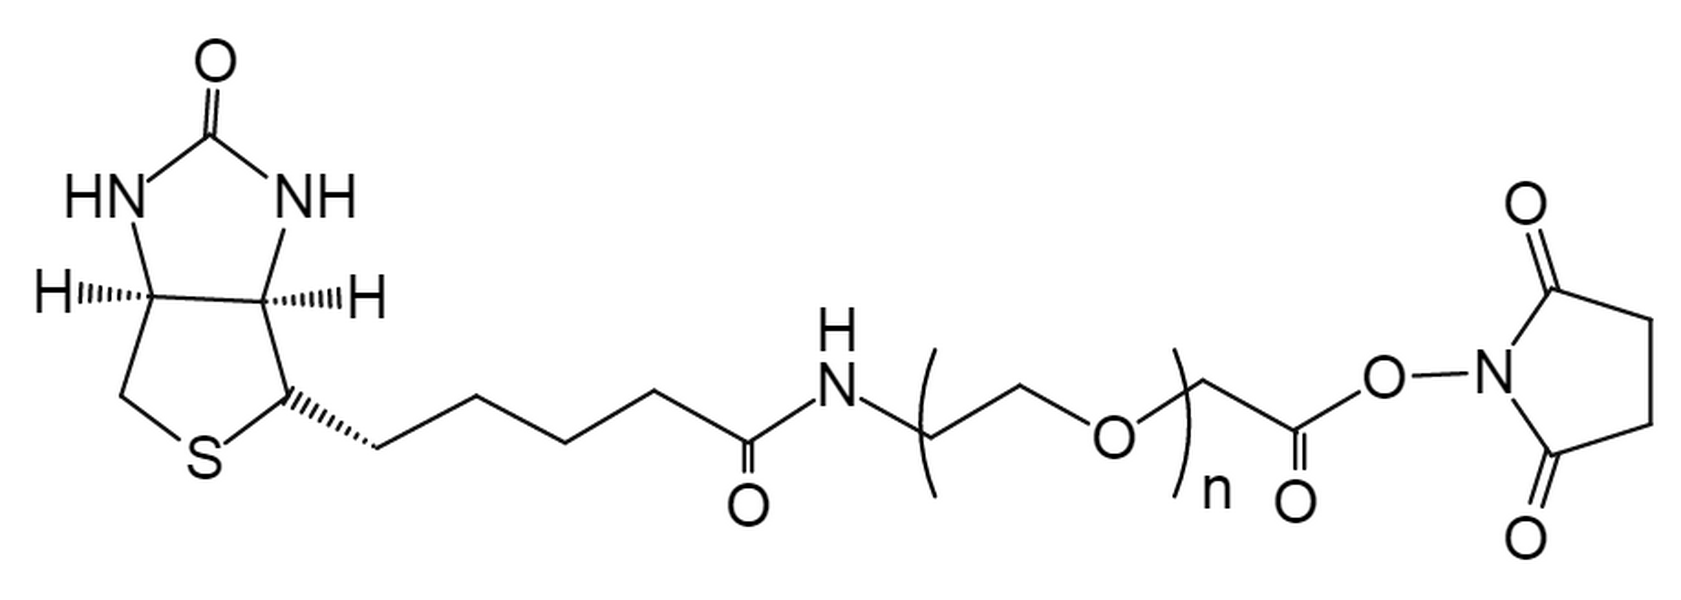 Biotin-PEG-SCM,MW 2K